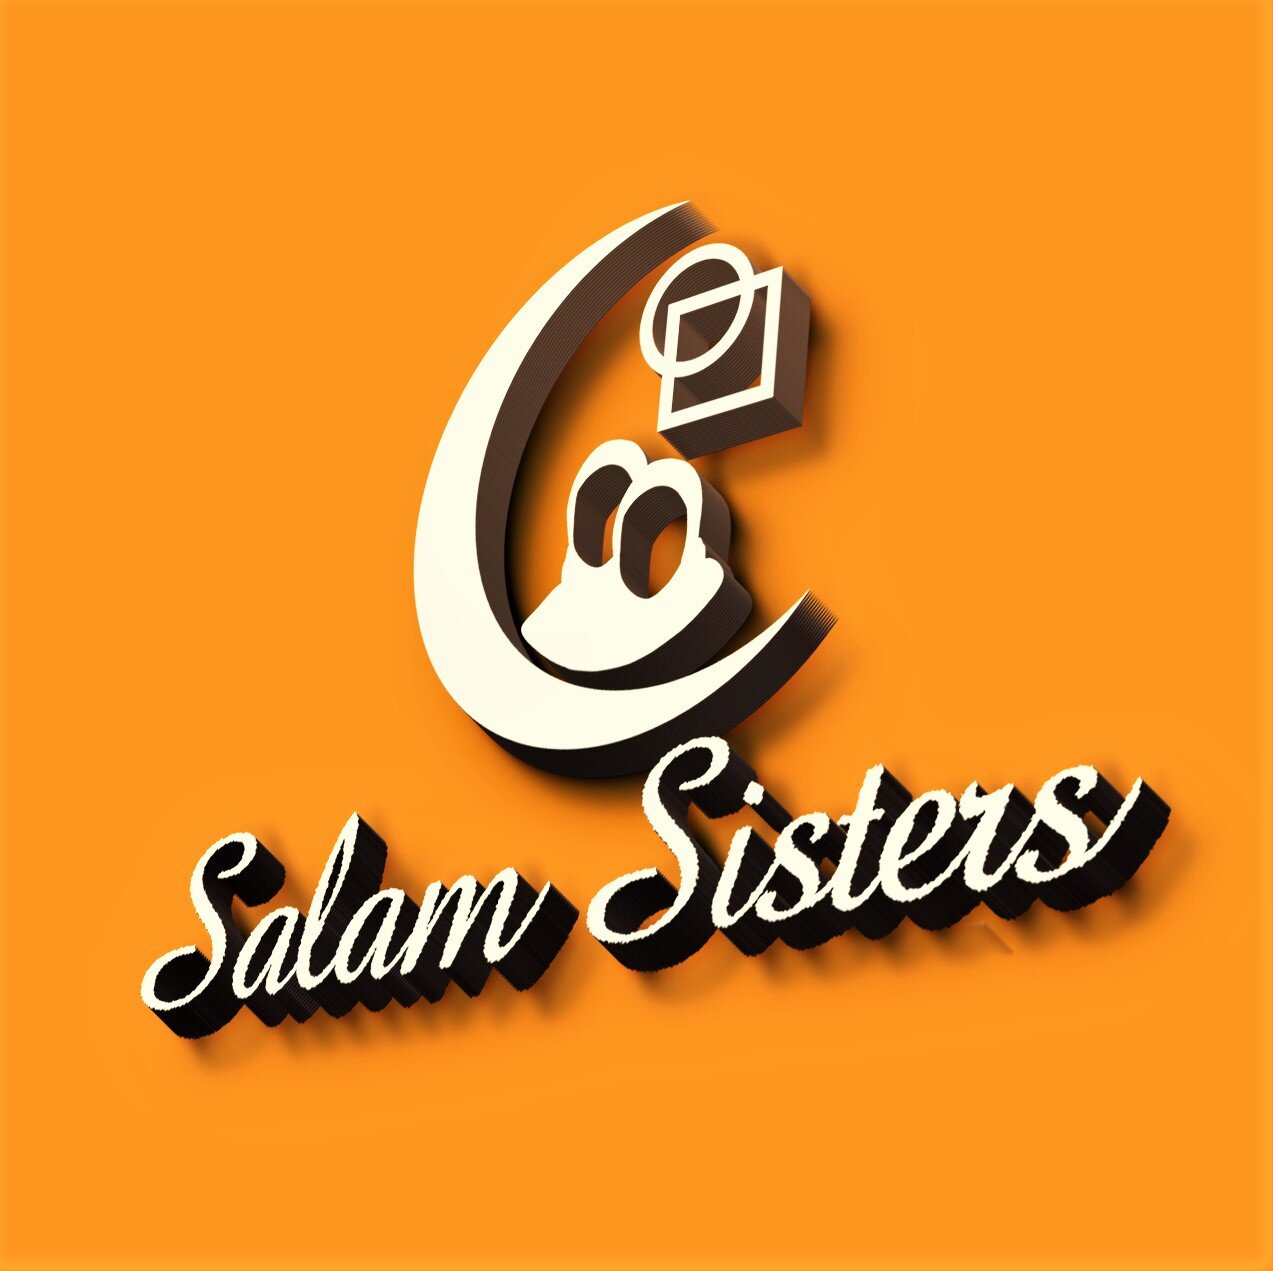 Salam Sisters